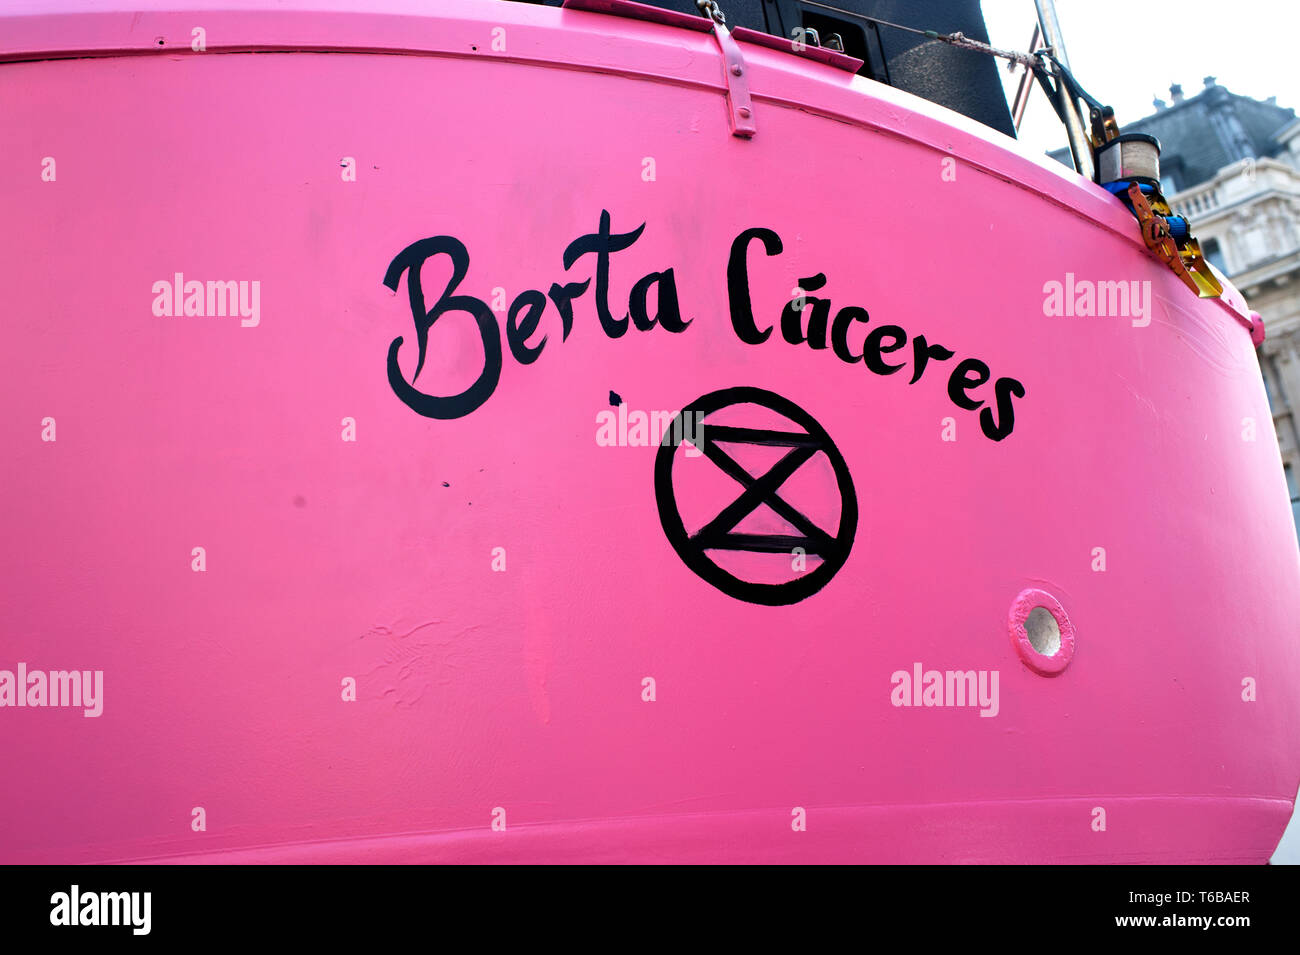 Aussterben Rebellion Protest, London. Oxford Circus. Bertha Carceres, die Rosa Boot, benannt nach dem ermordeten Honduranischen Umweltaktivist, mit ' Stockfoto